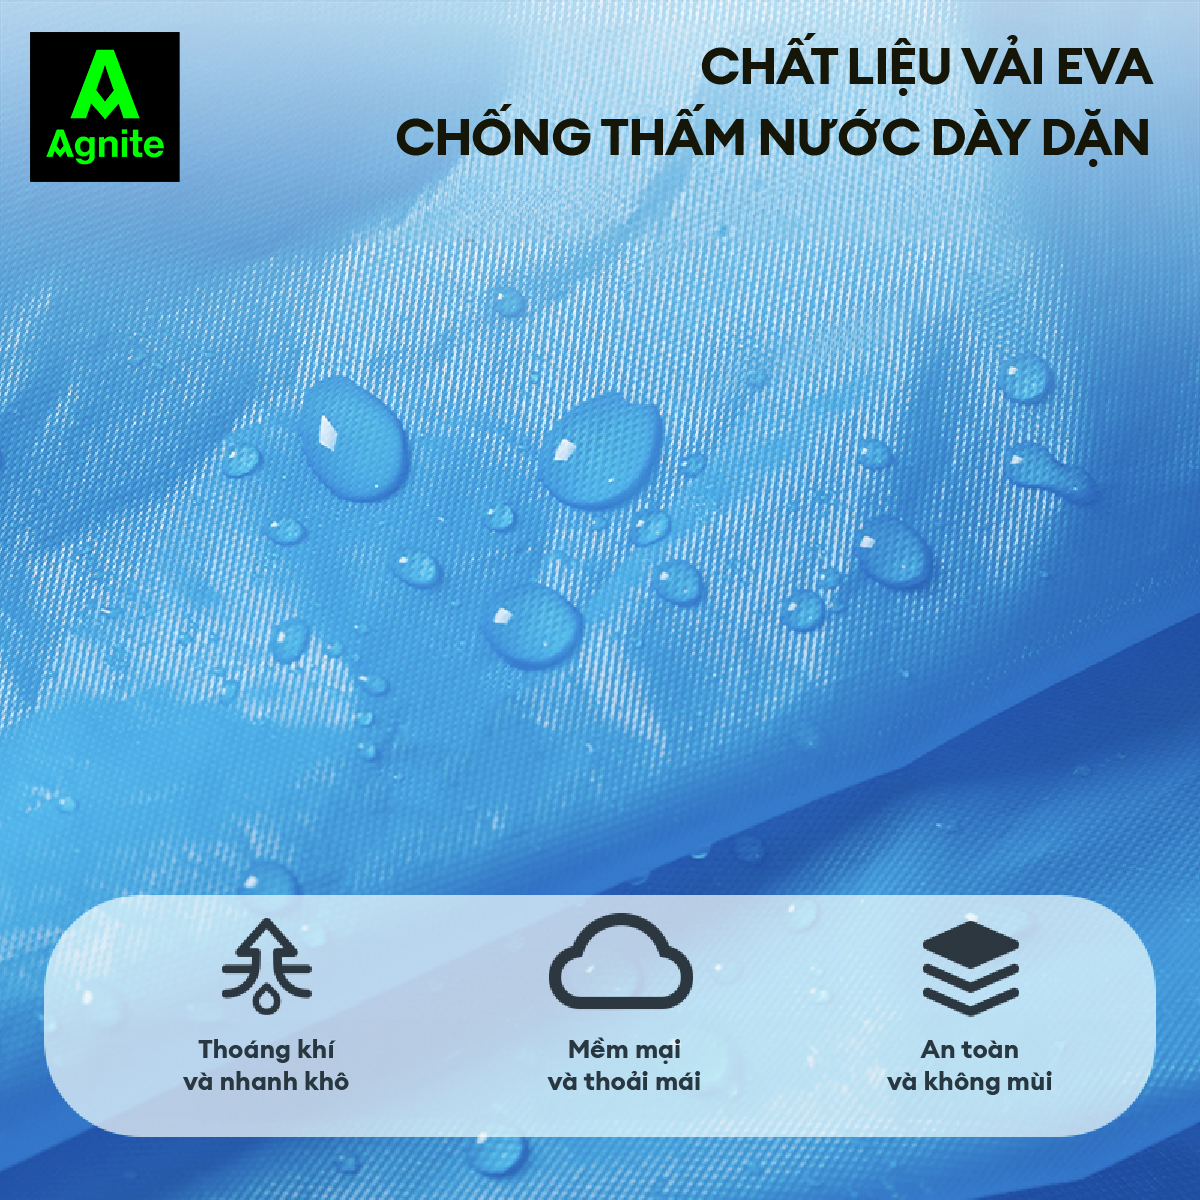 Áo mưa dài Agnite chất liệu EVA cao cấp - Siêu bền - Chống thấm nước tốt - Thiết kế thoải mái - Nhiều màu sắc - VS4075